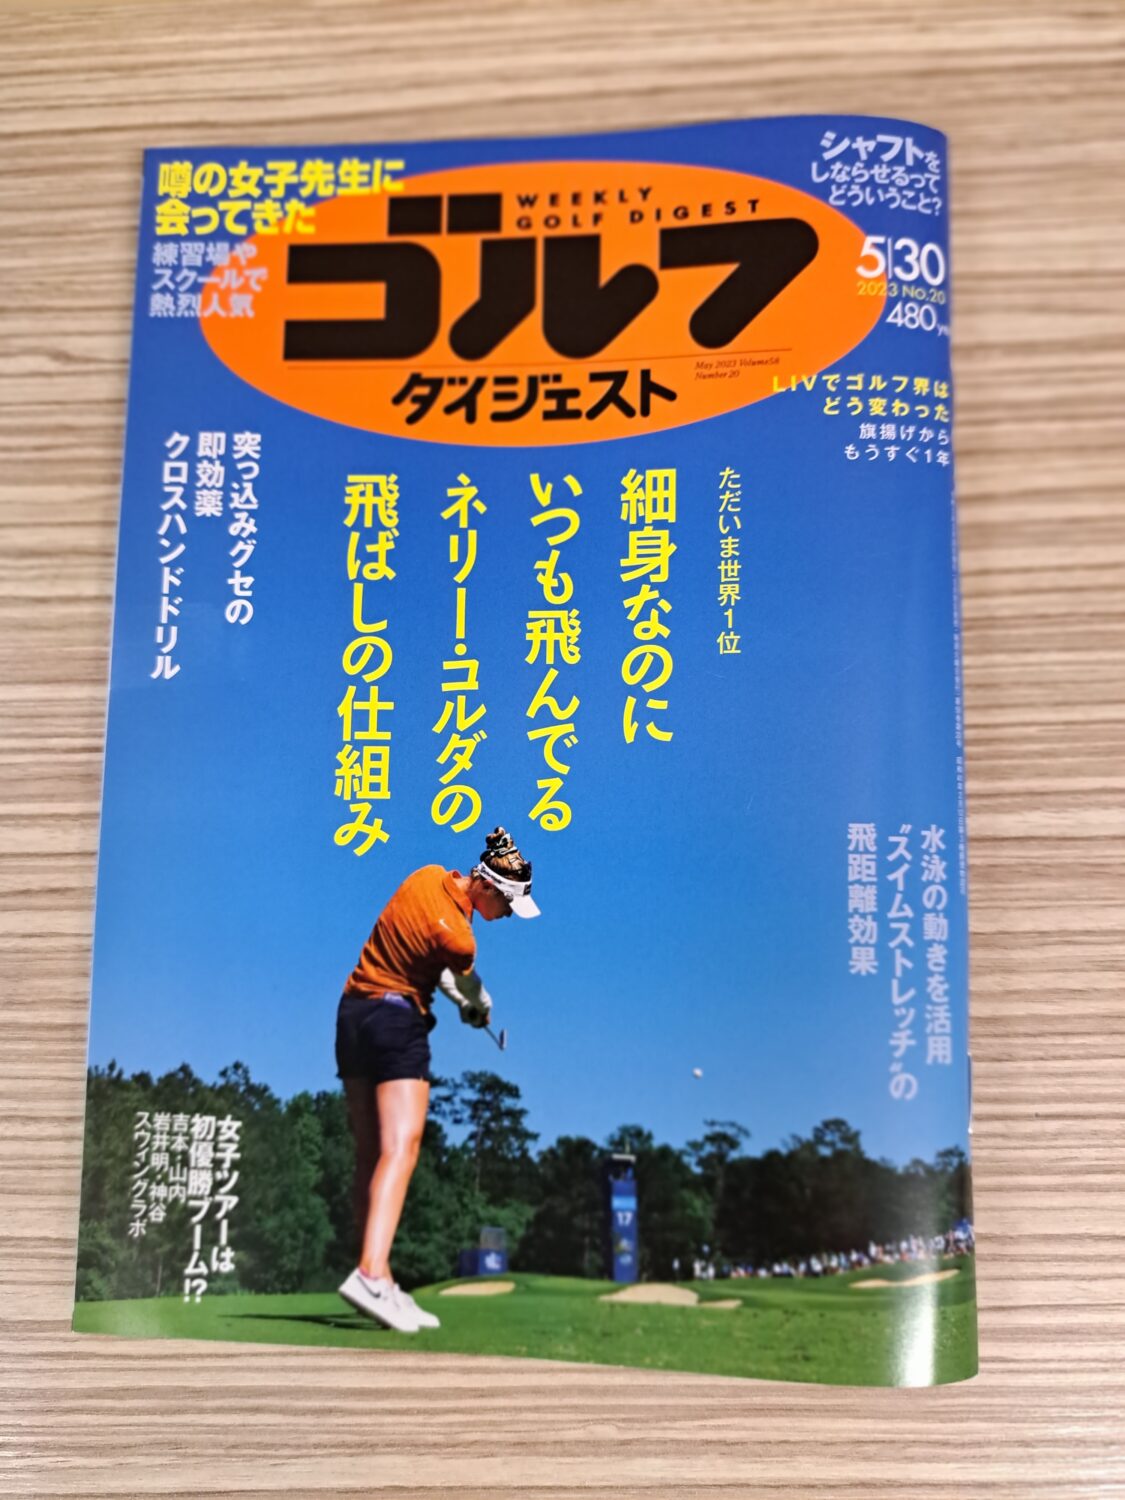 日本プロゴルフ協会主催のティーチングアワード最優秀賞受賞の松下プロが、週刊ゴルフダイジェストに掲載されました！！